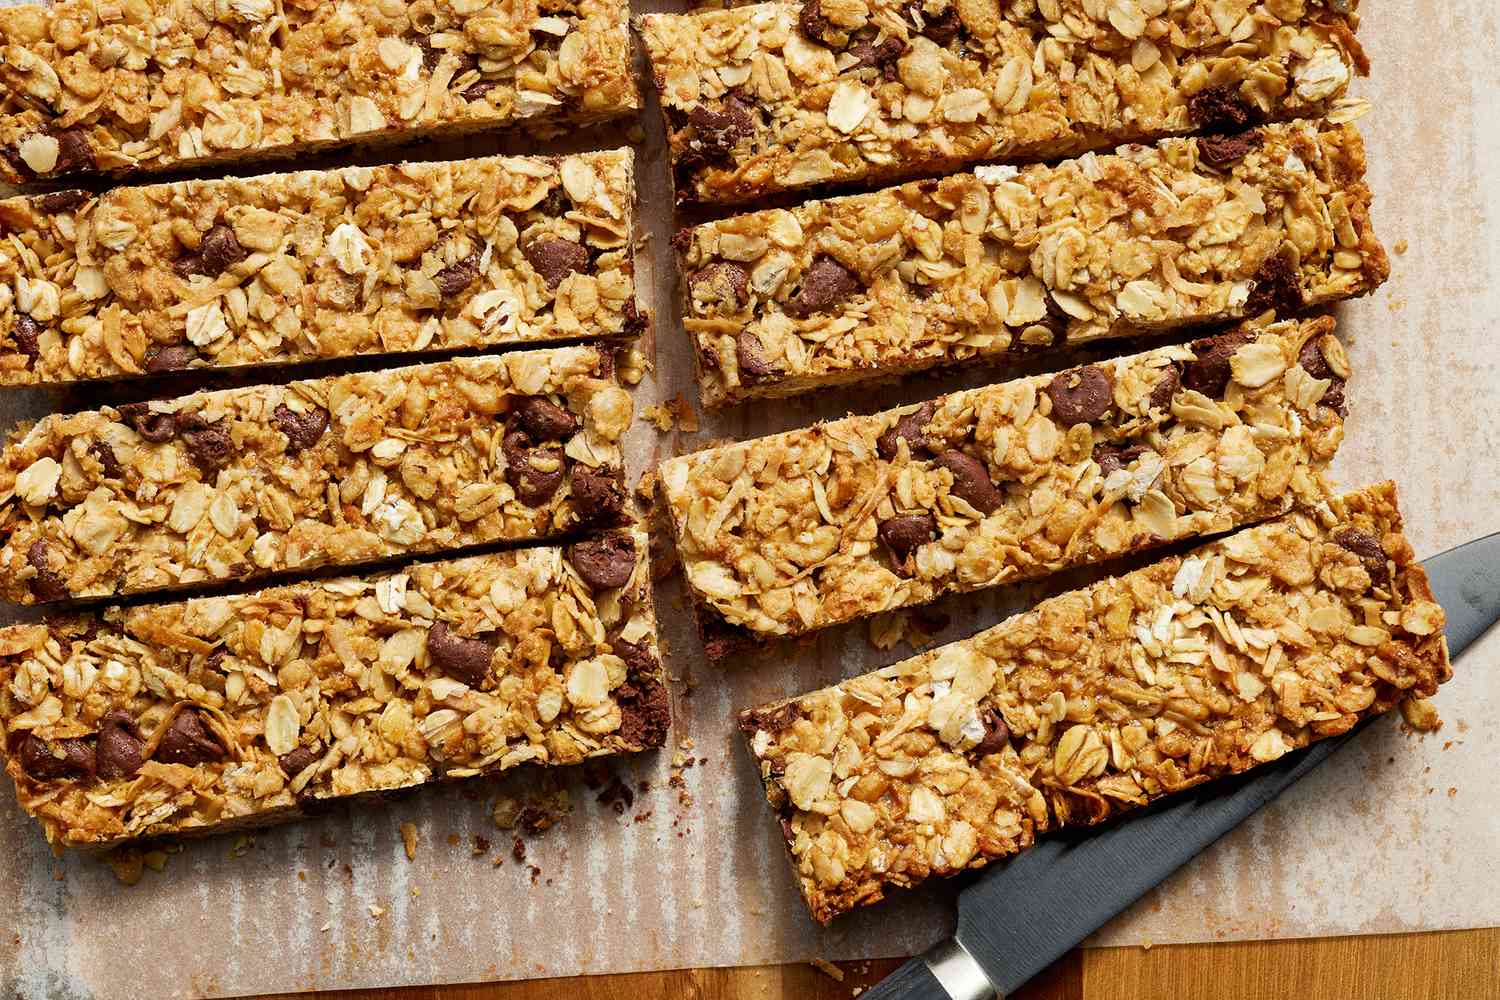 Foto de la receta de la barra de granola de coco cortada en barras de chocolate